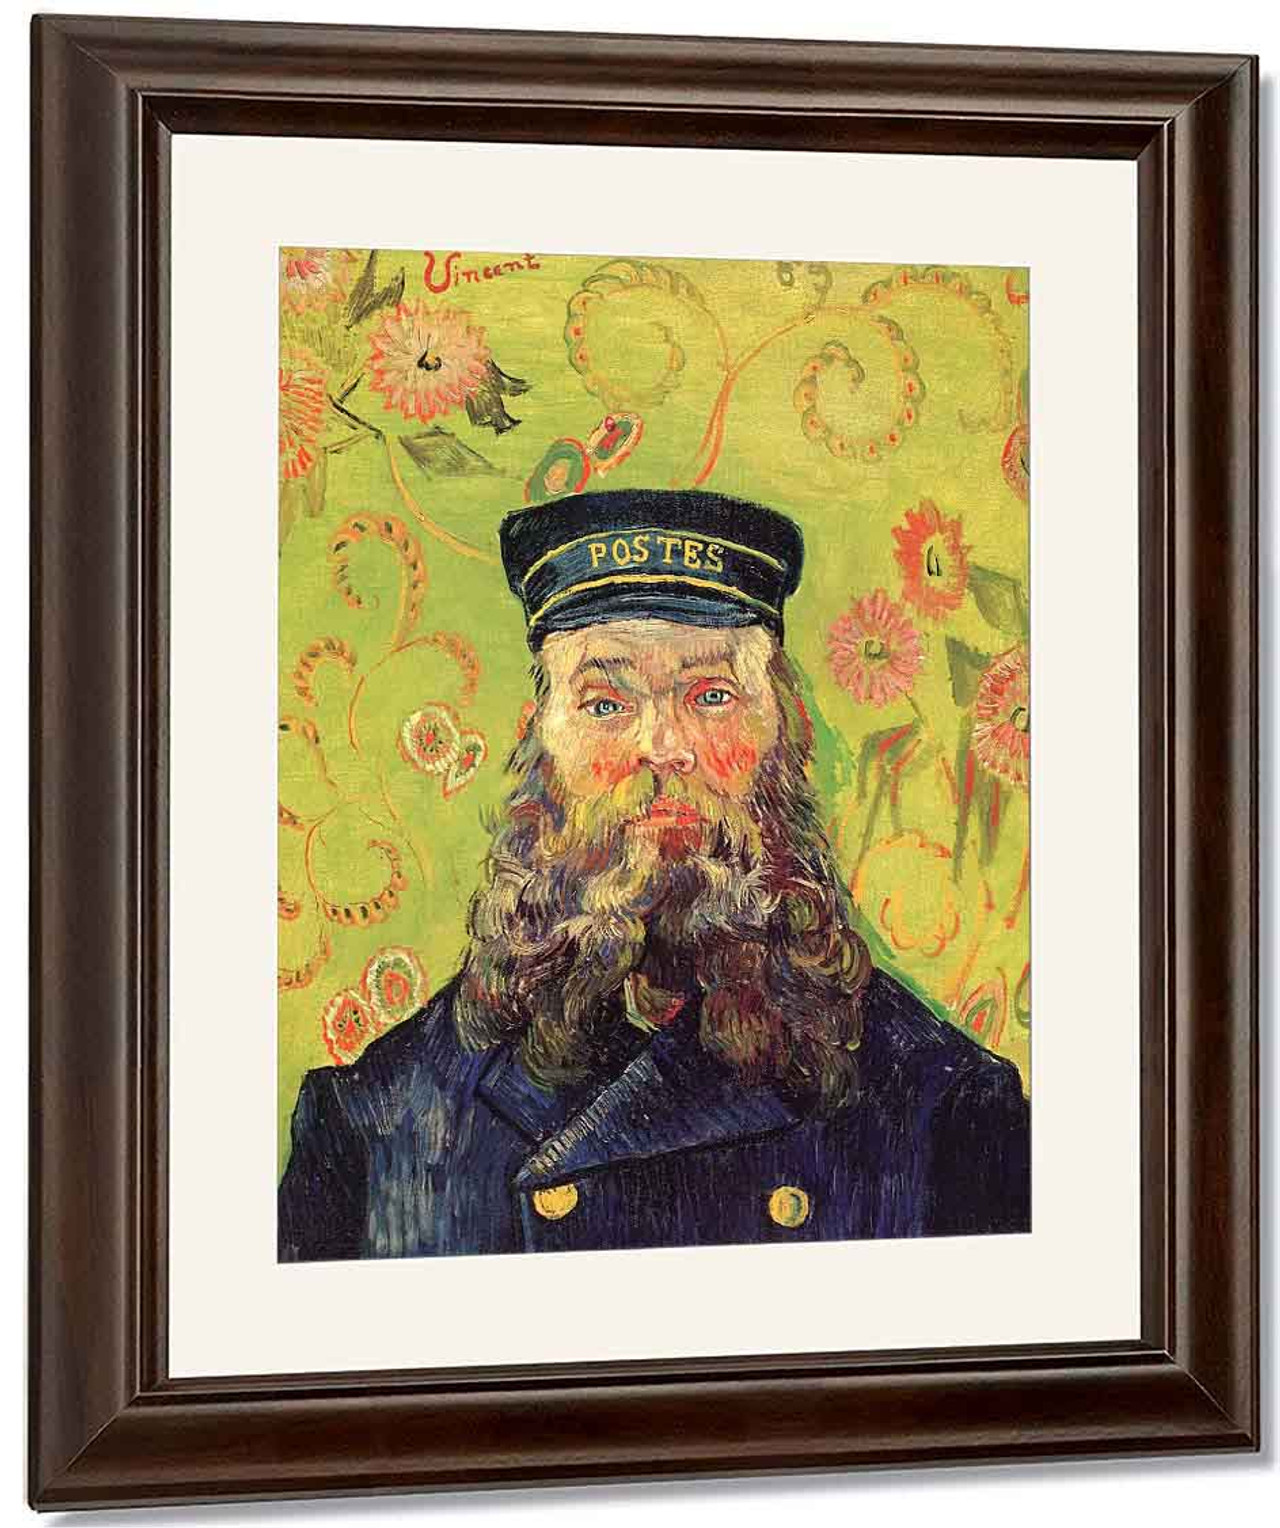 Joseph Etienne Roulin By Vincent Van Gogh Reproduction